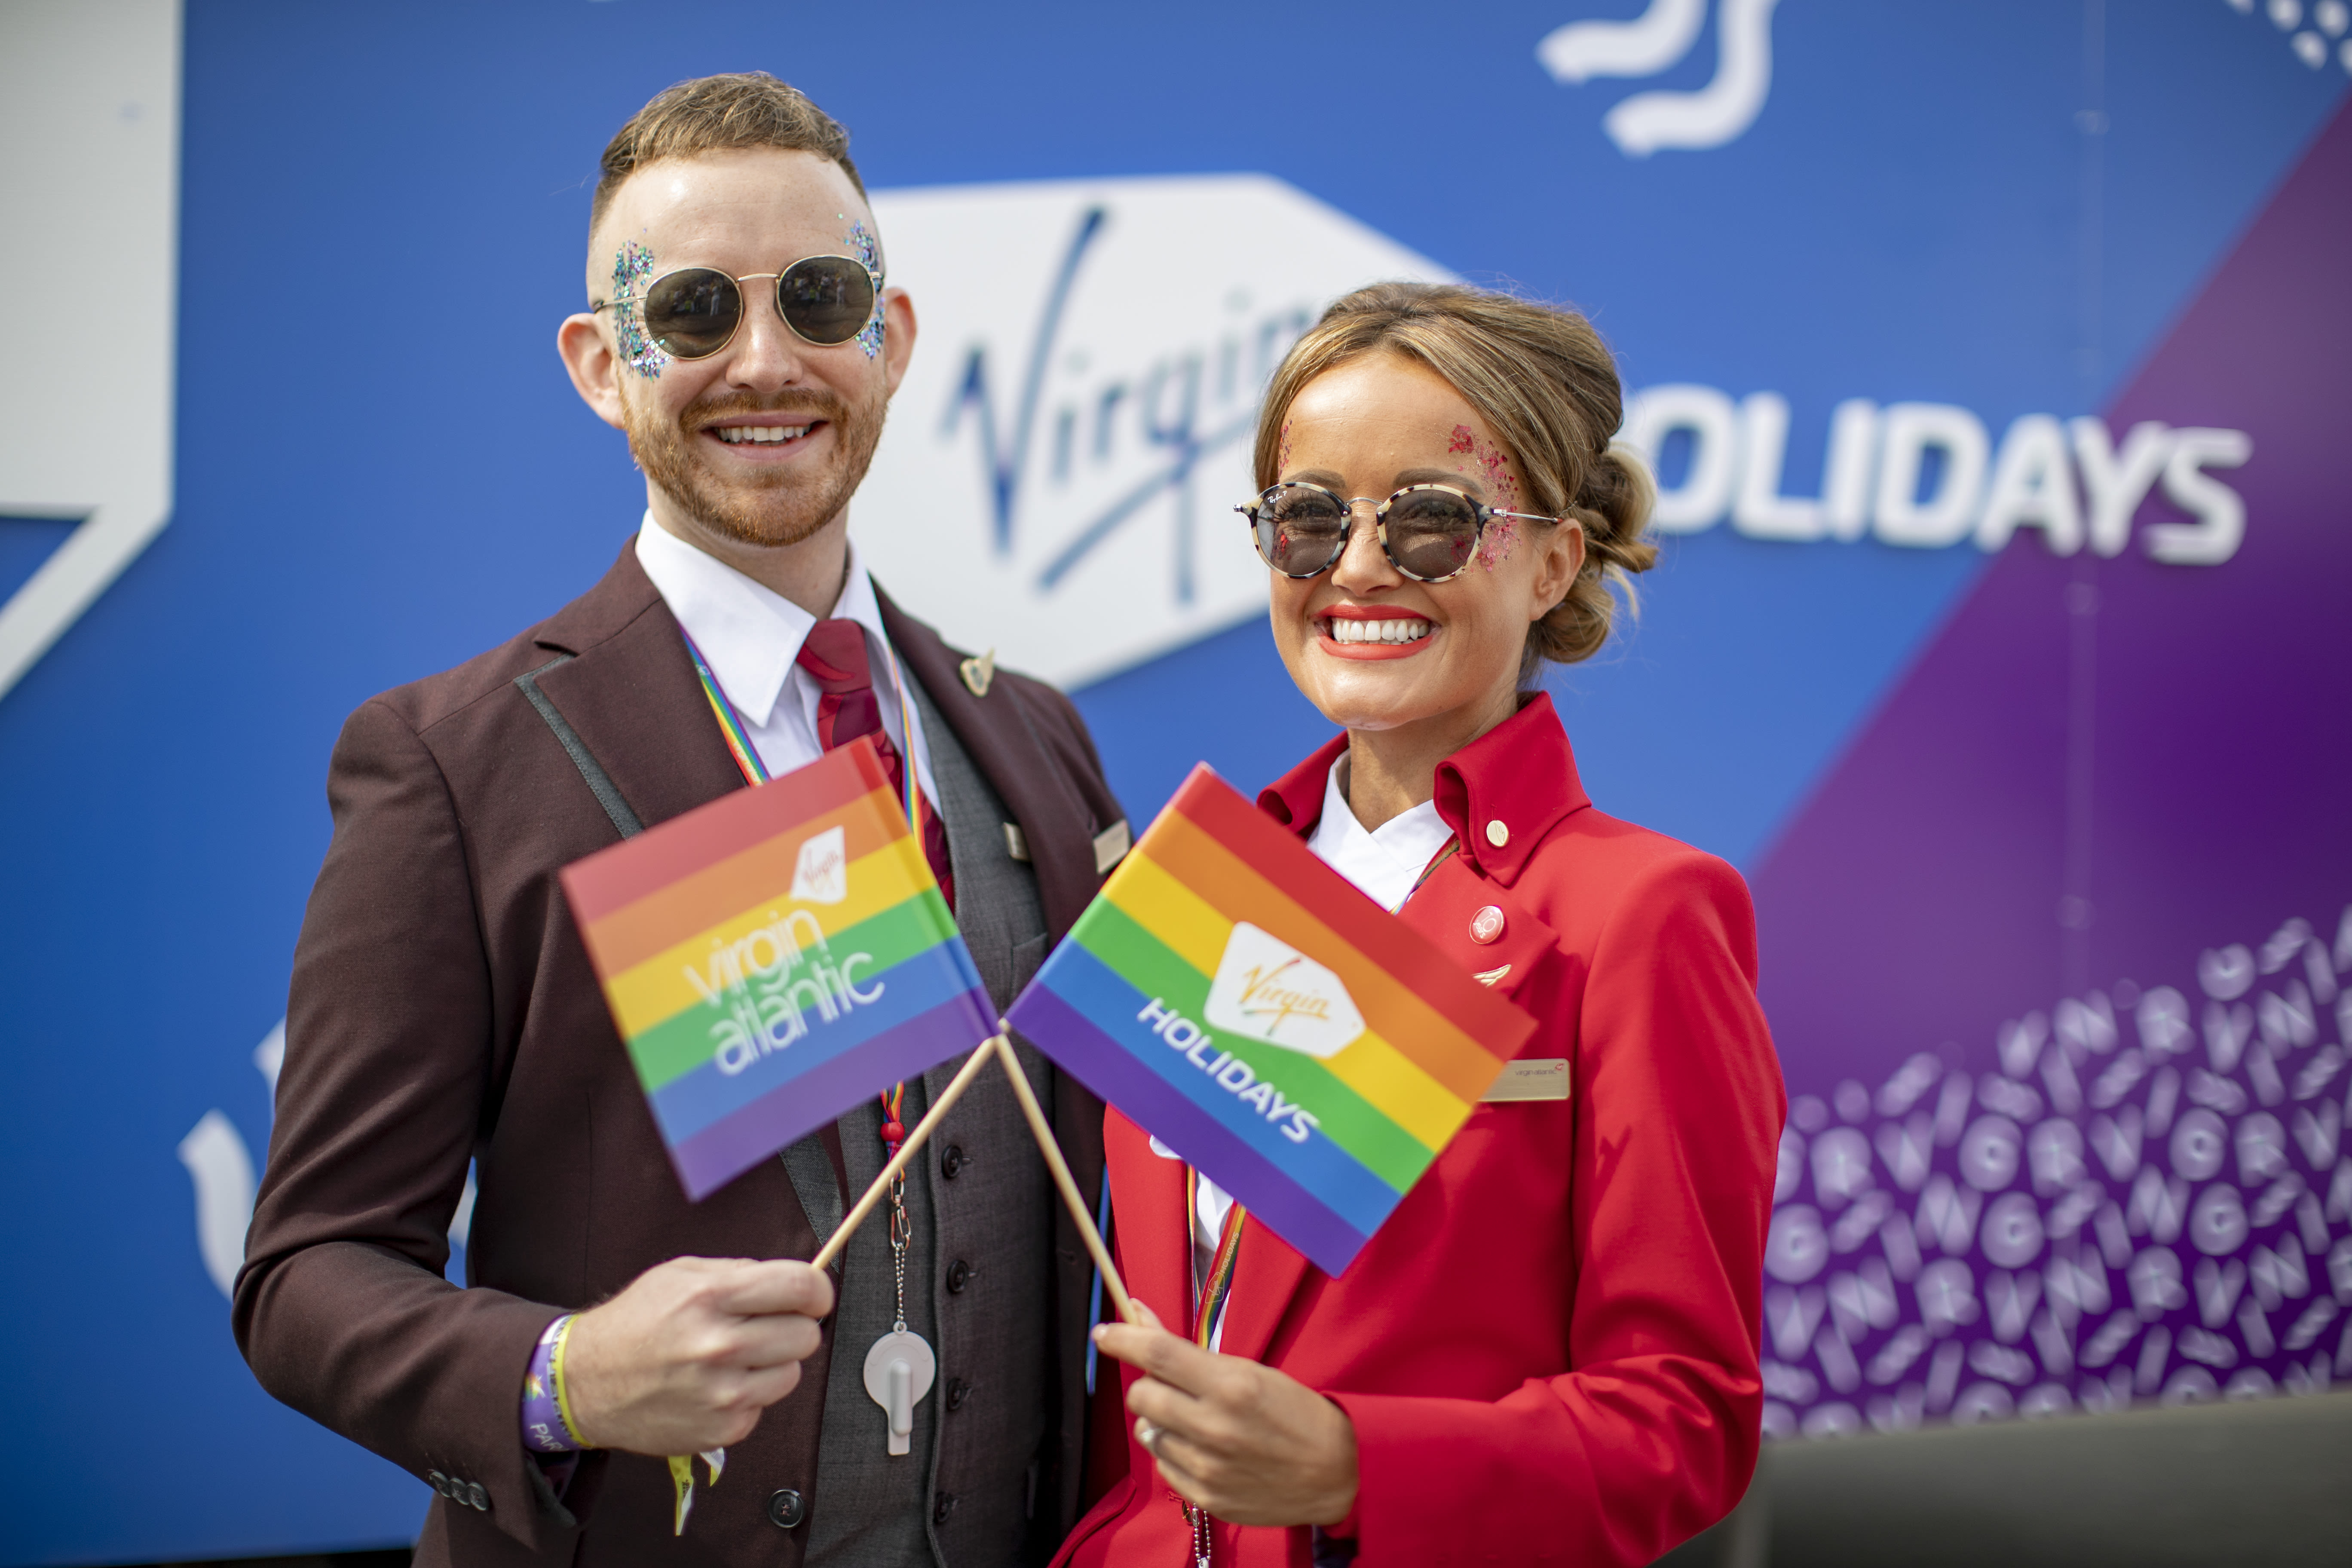 Virgin Atlantic crew waving Pride flags